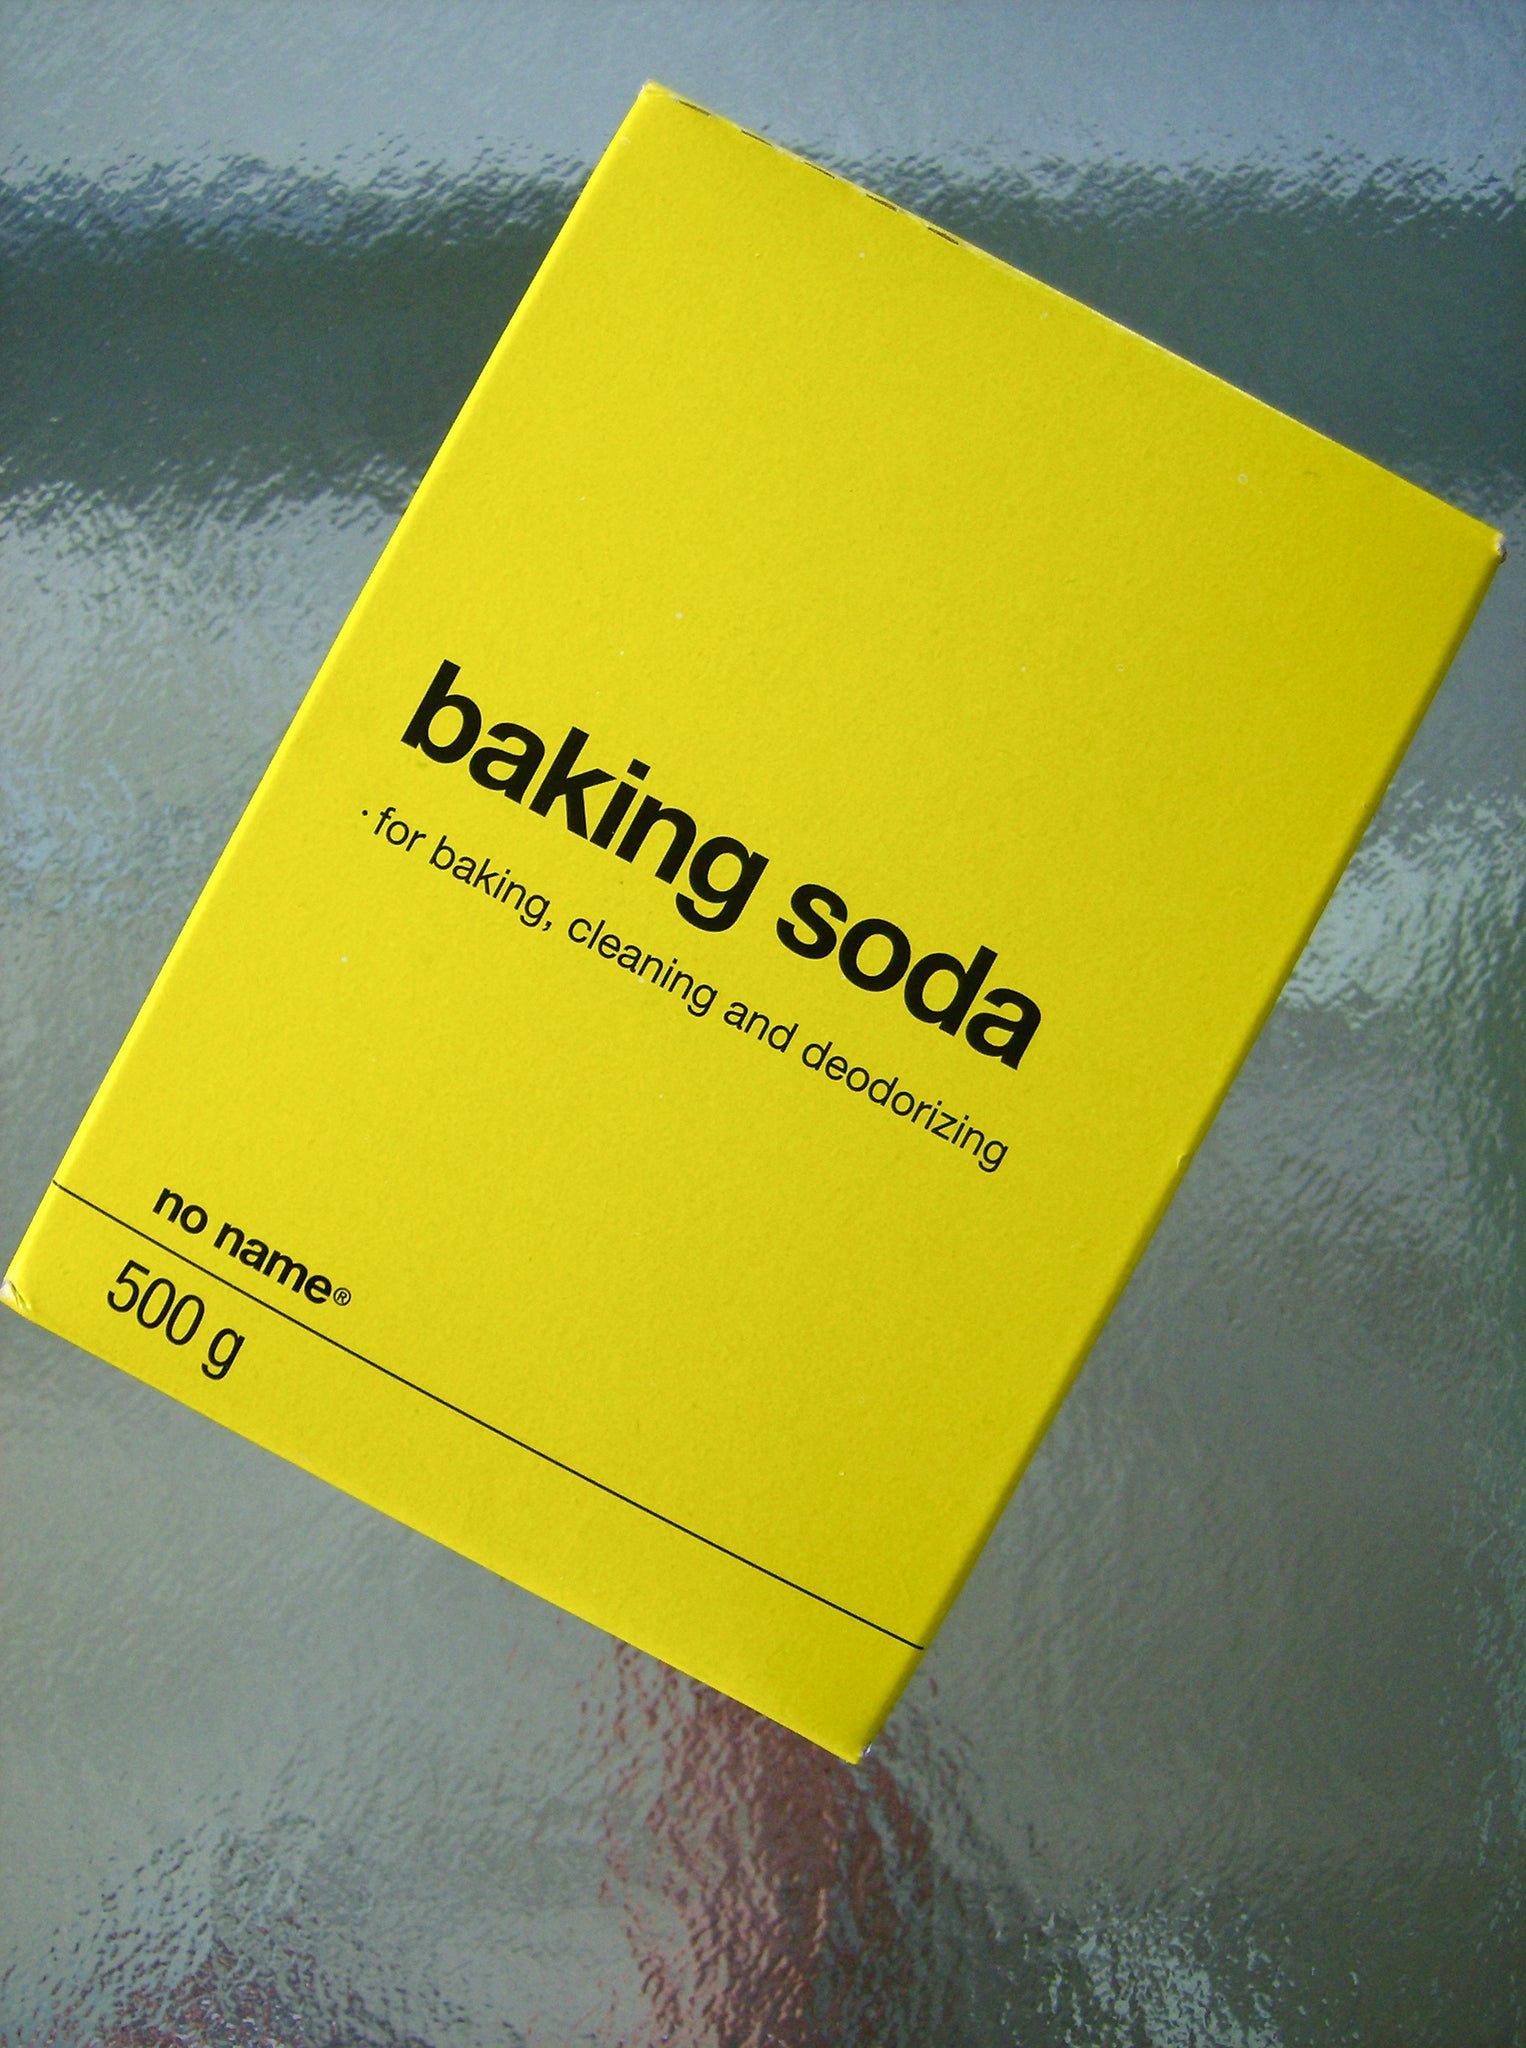 image of baking soda box